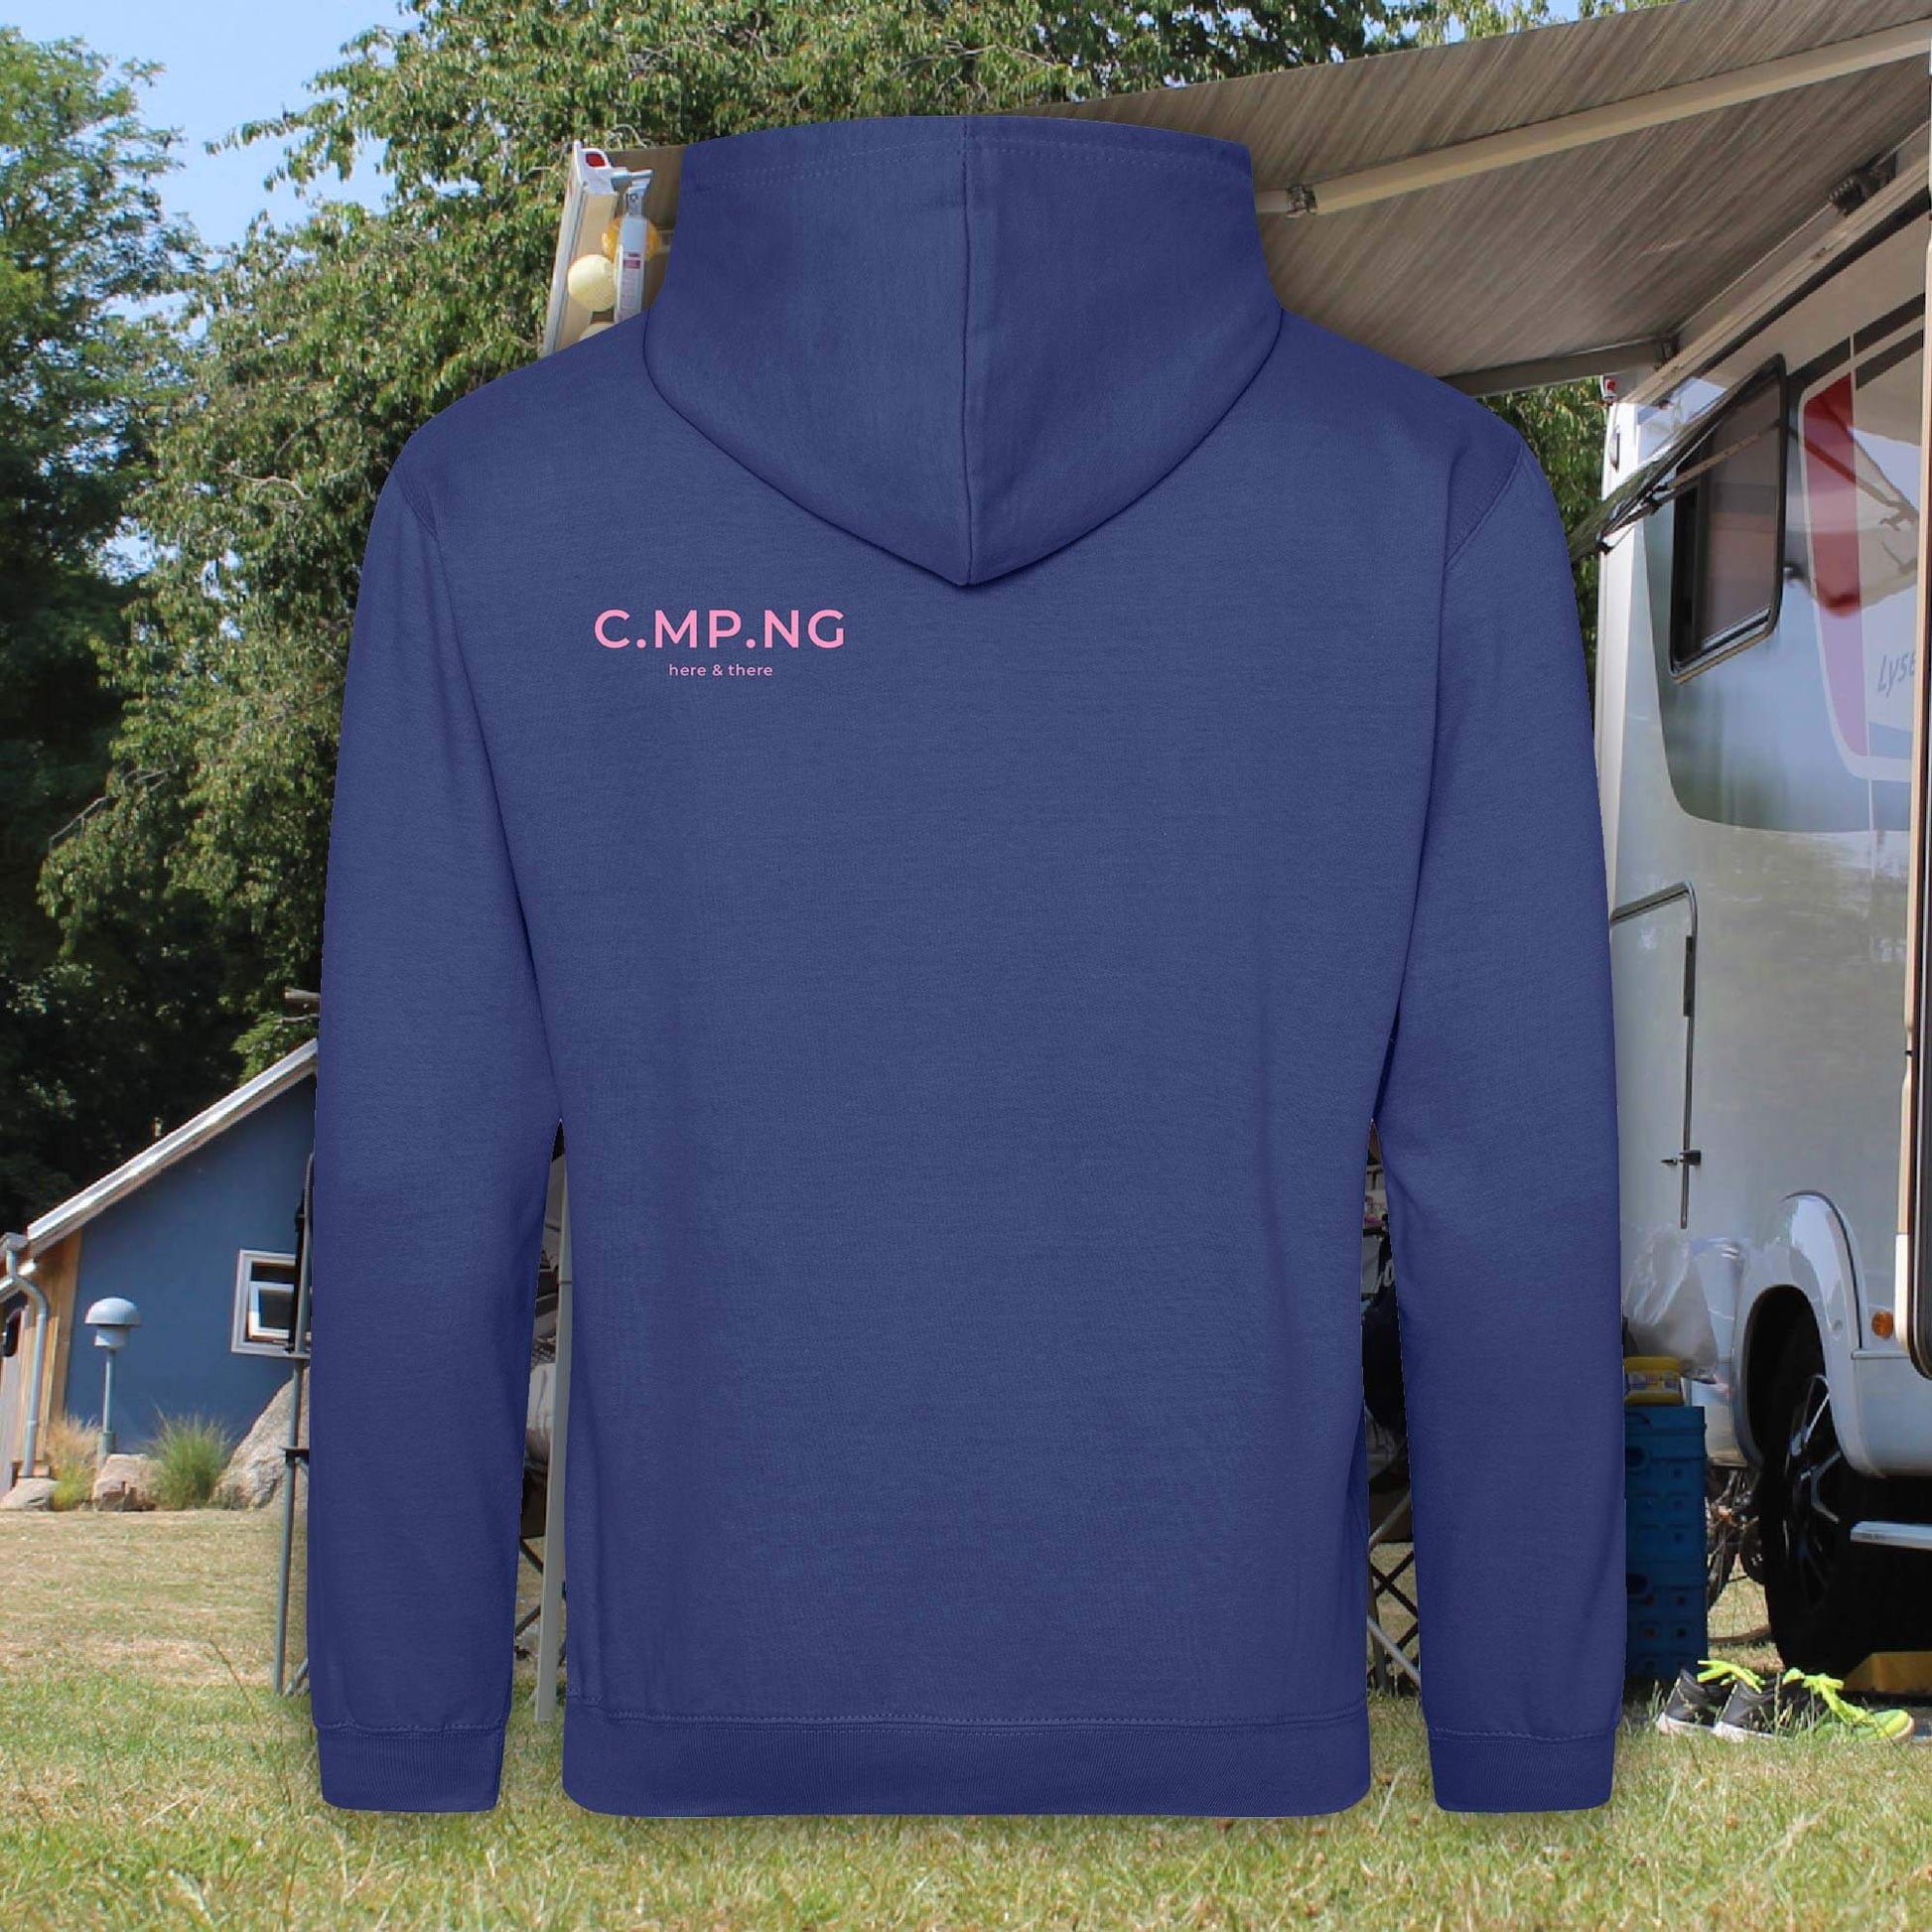 Camping-Hoodie in dunkelblau mit rosa C.MP.NG-Aufdruck auf der Schulter